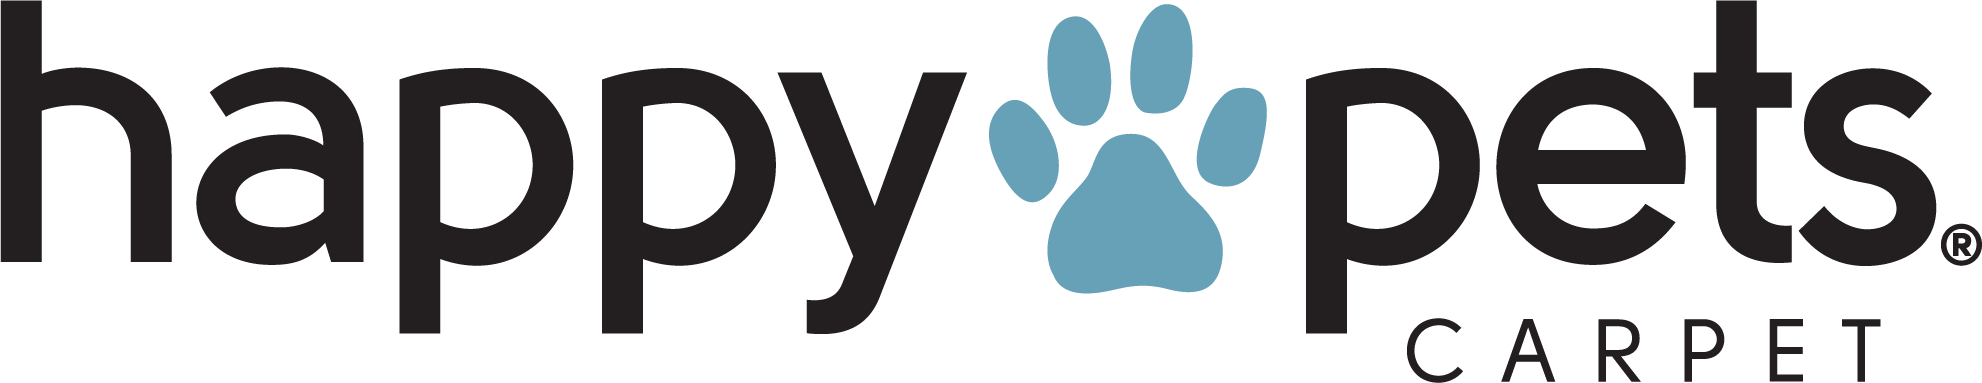 Pet Performance Happy Pets Logo |  CarpetsPlus COLORTILE & Wholesale Flooring 